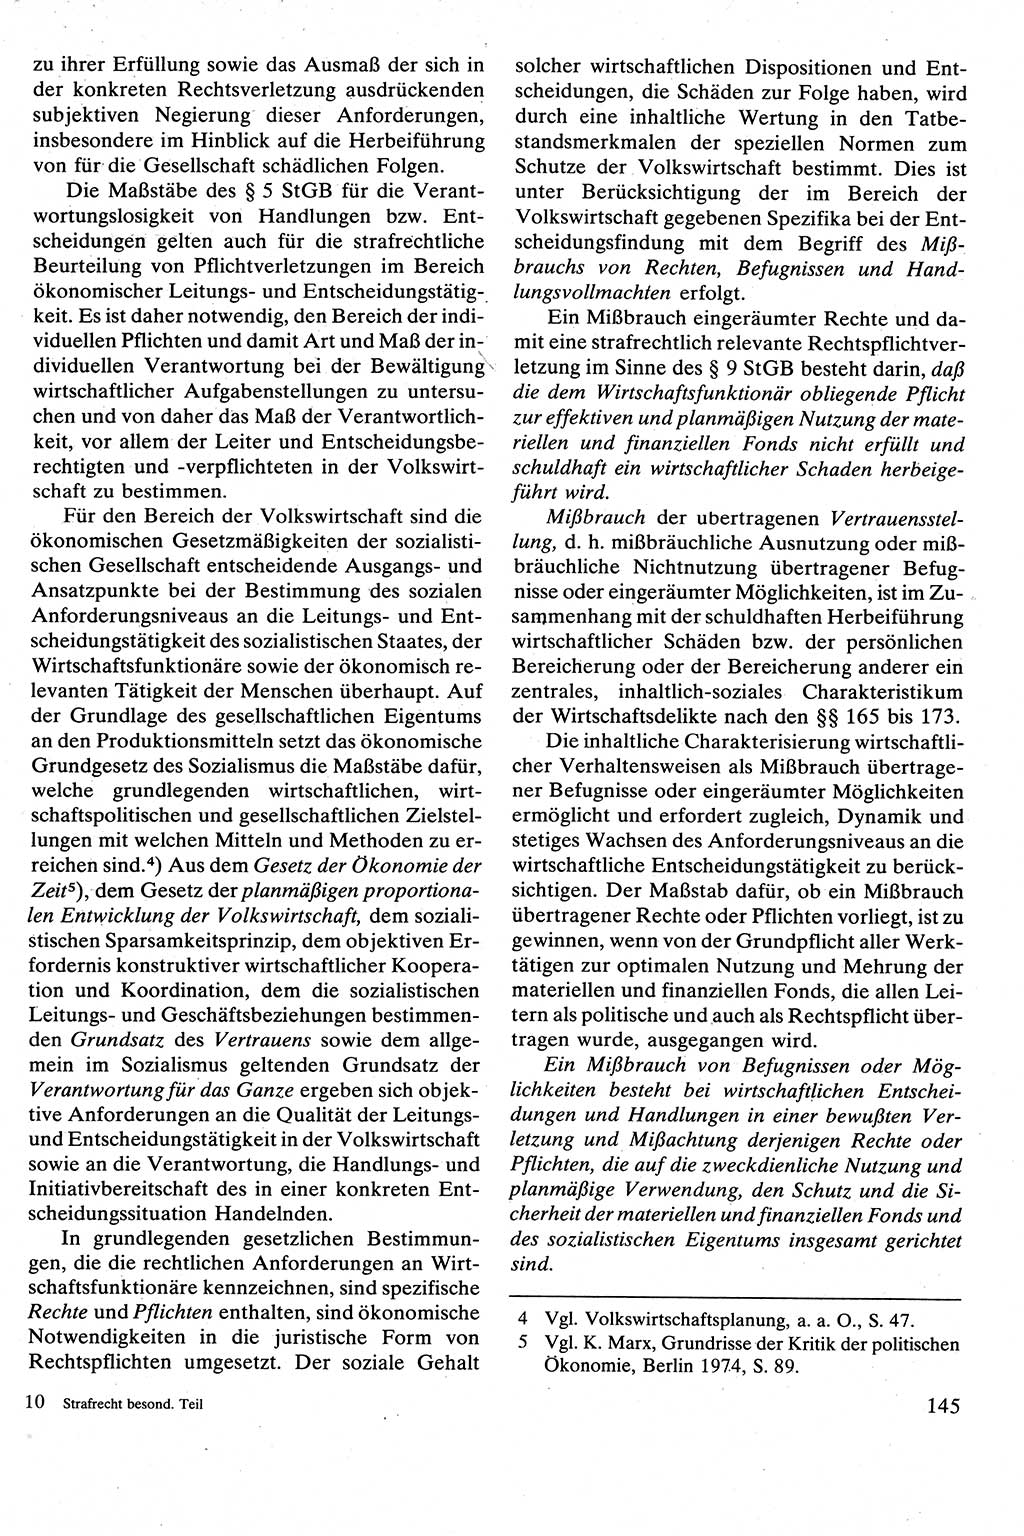 Strafrecht [Deutsche Demokratische Republik (DDR)], Besonderer Teil, Lehrbuch 1981, Seite 145 (Strafr. DDR BT Lb. 1981, S. 145)